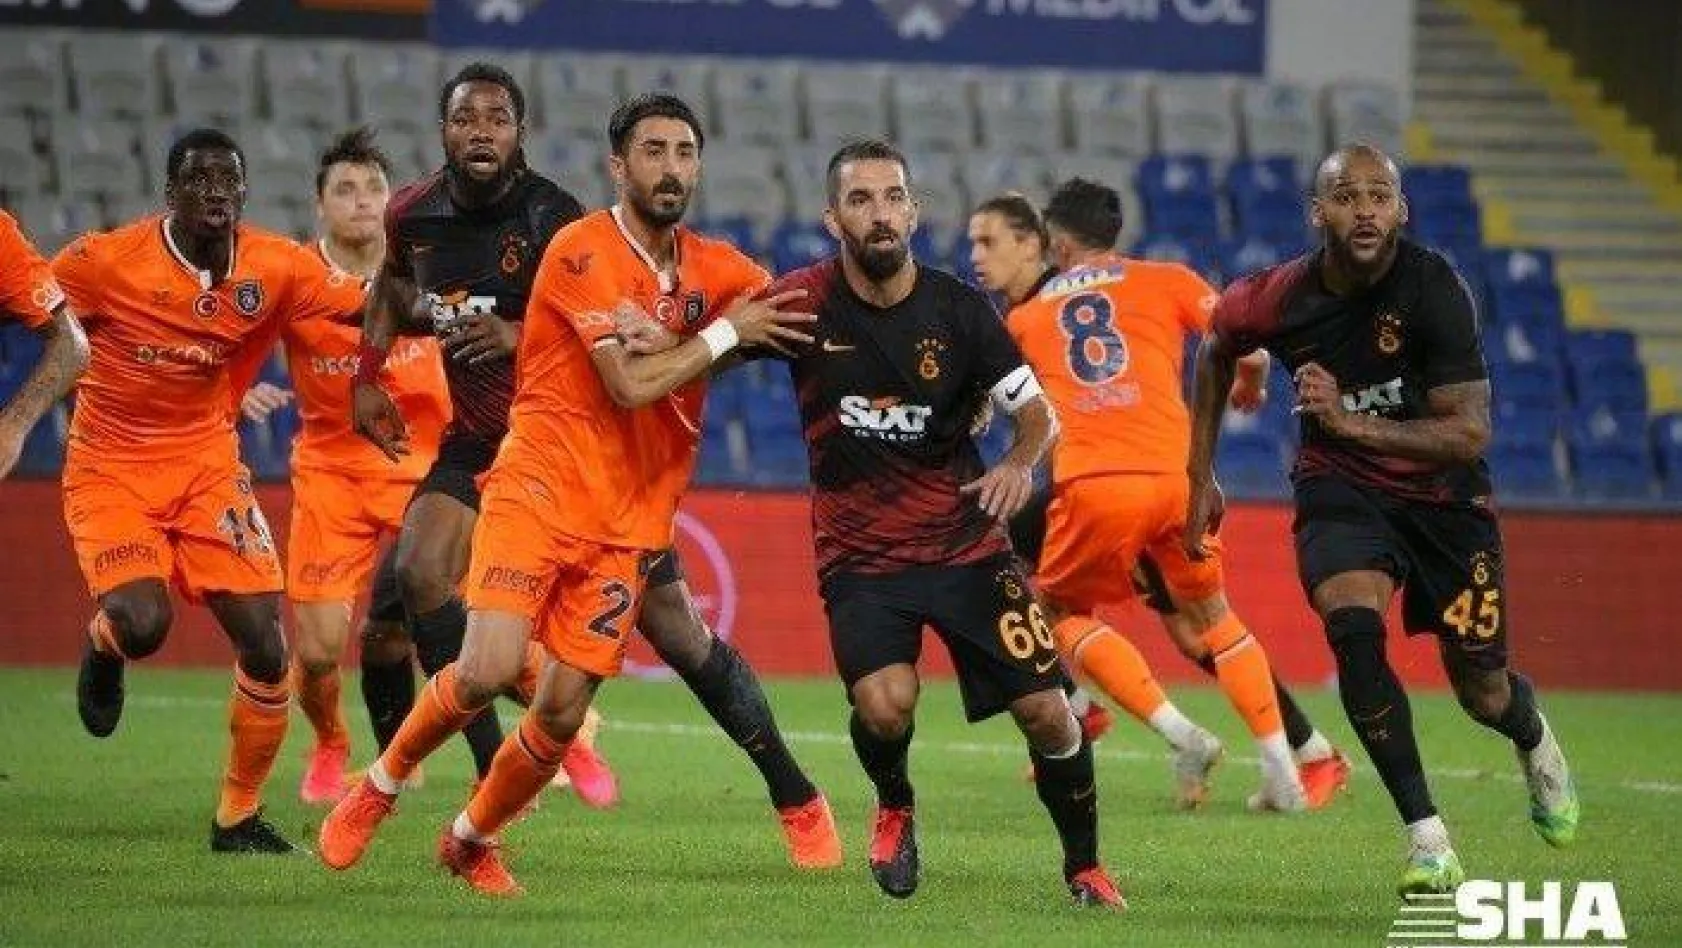 Medipol Başakşehir - Galatasaray maçından kareler -1-